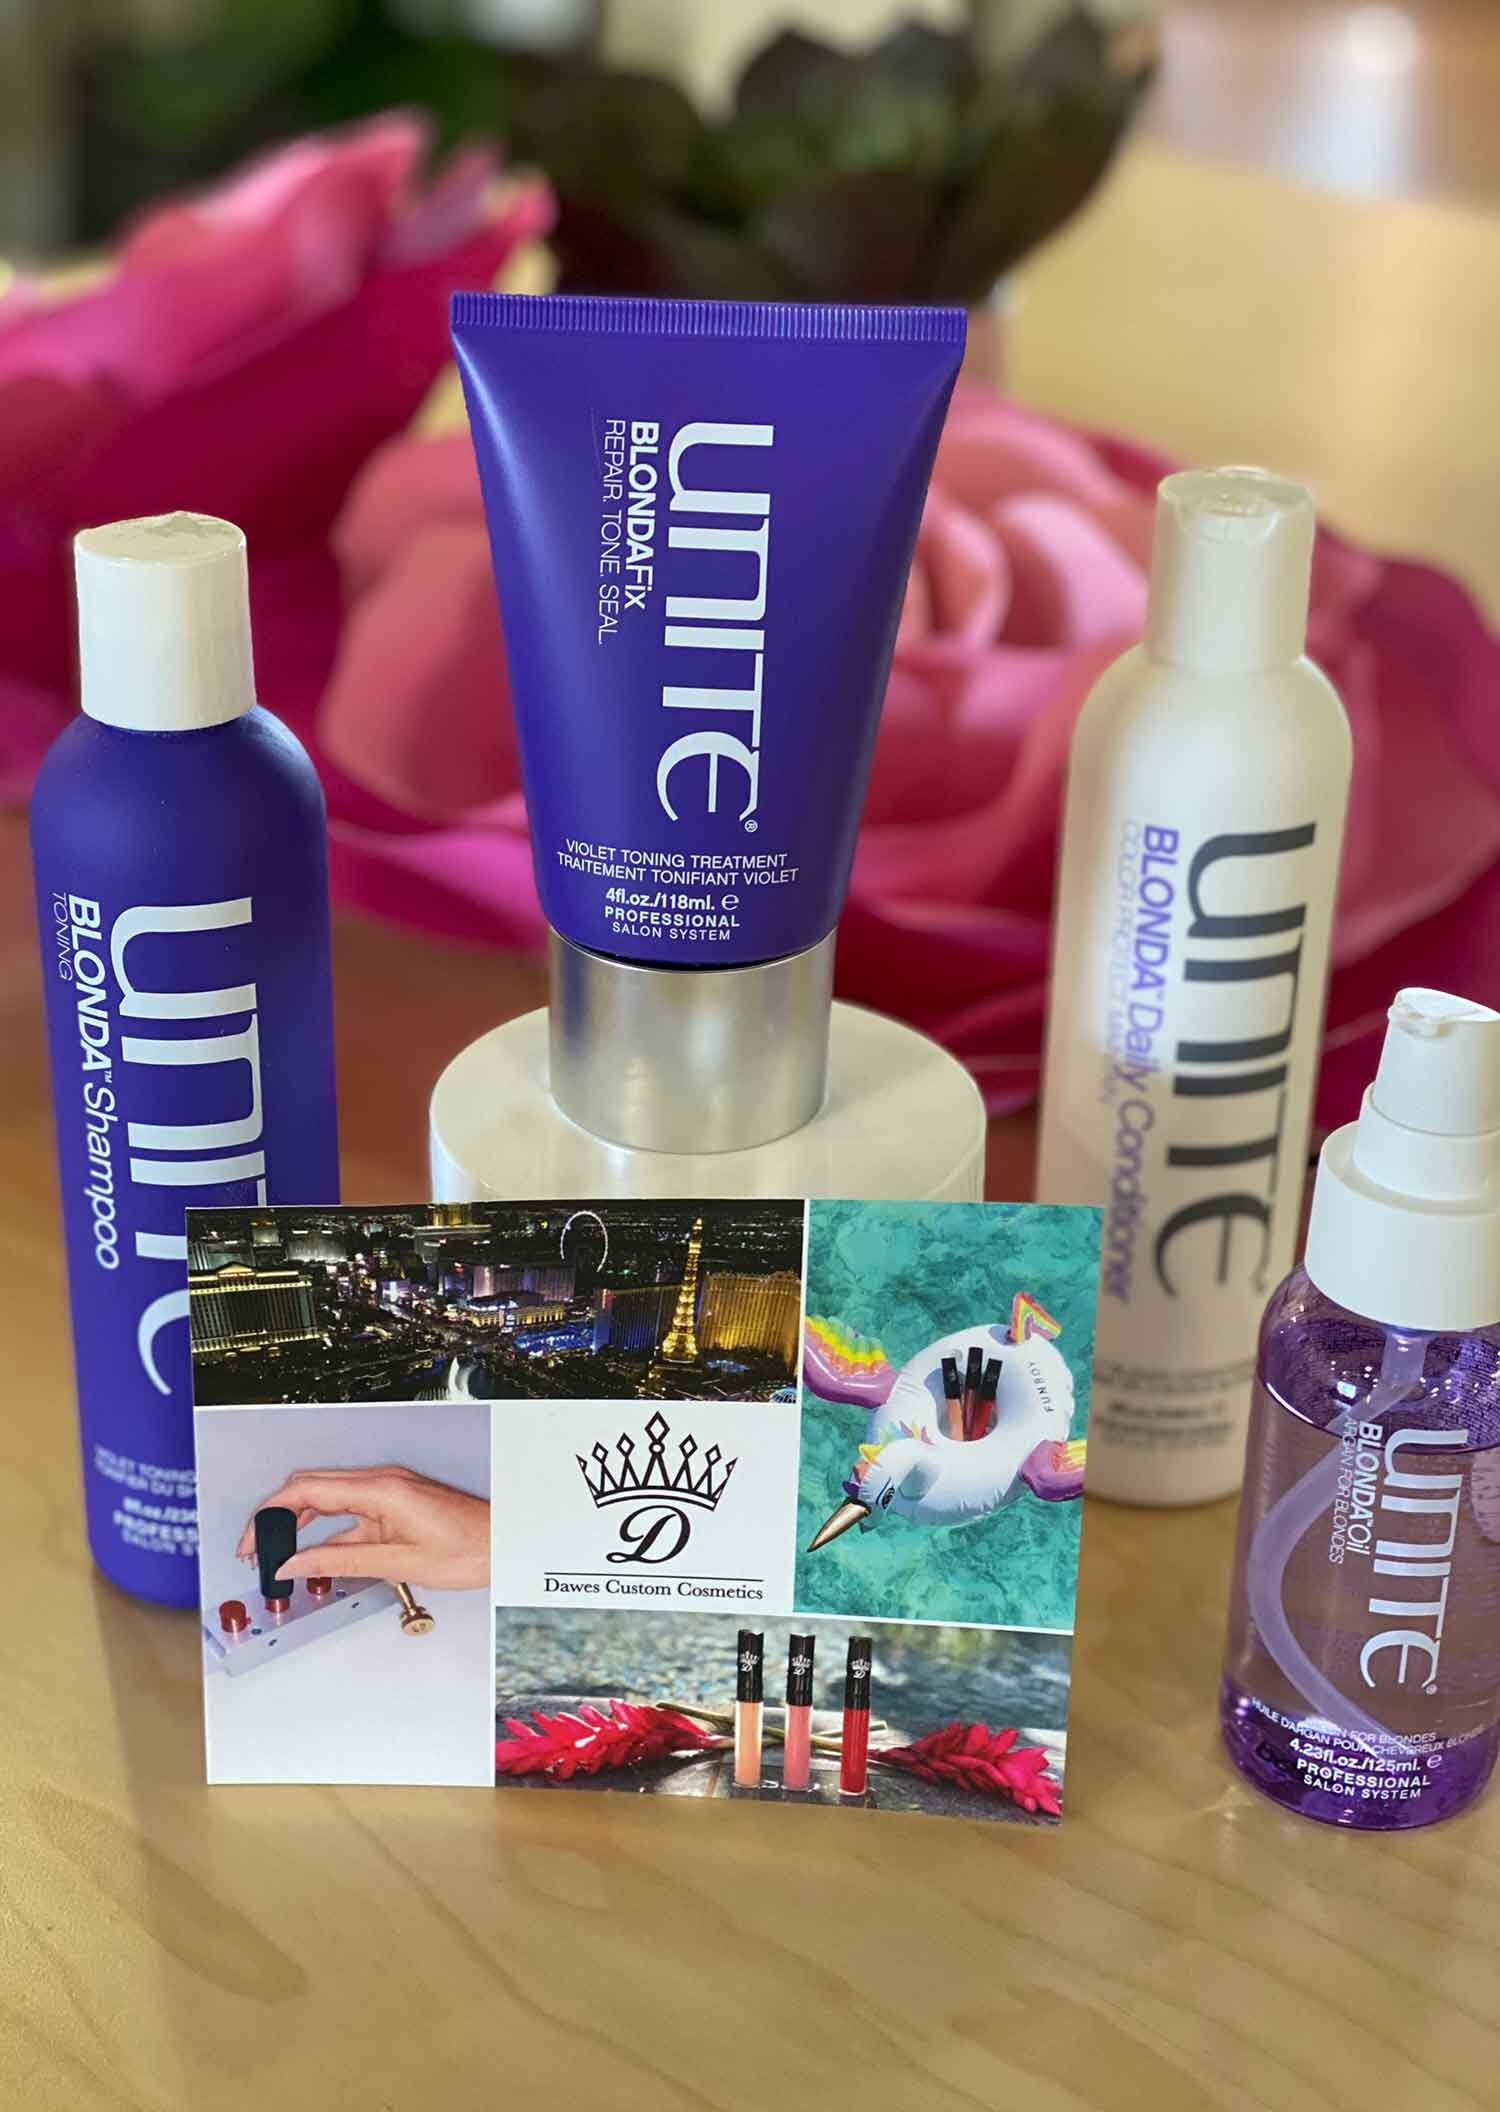 Unite Hair Care Dawes Custom Cosmetics lipsticks